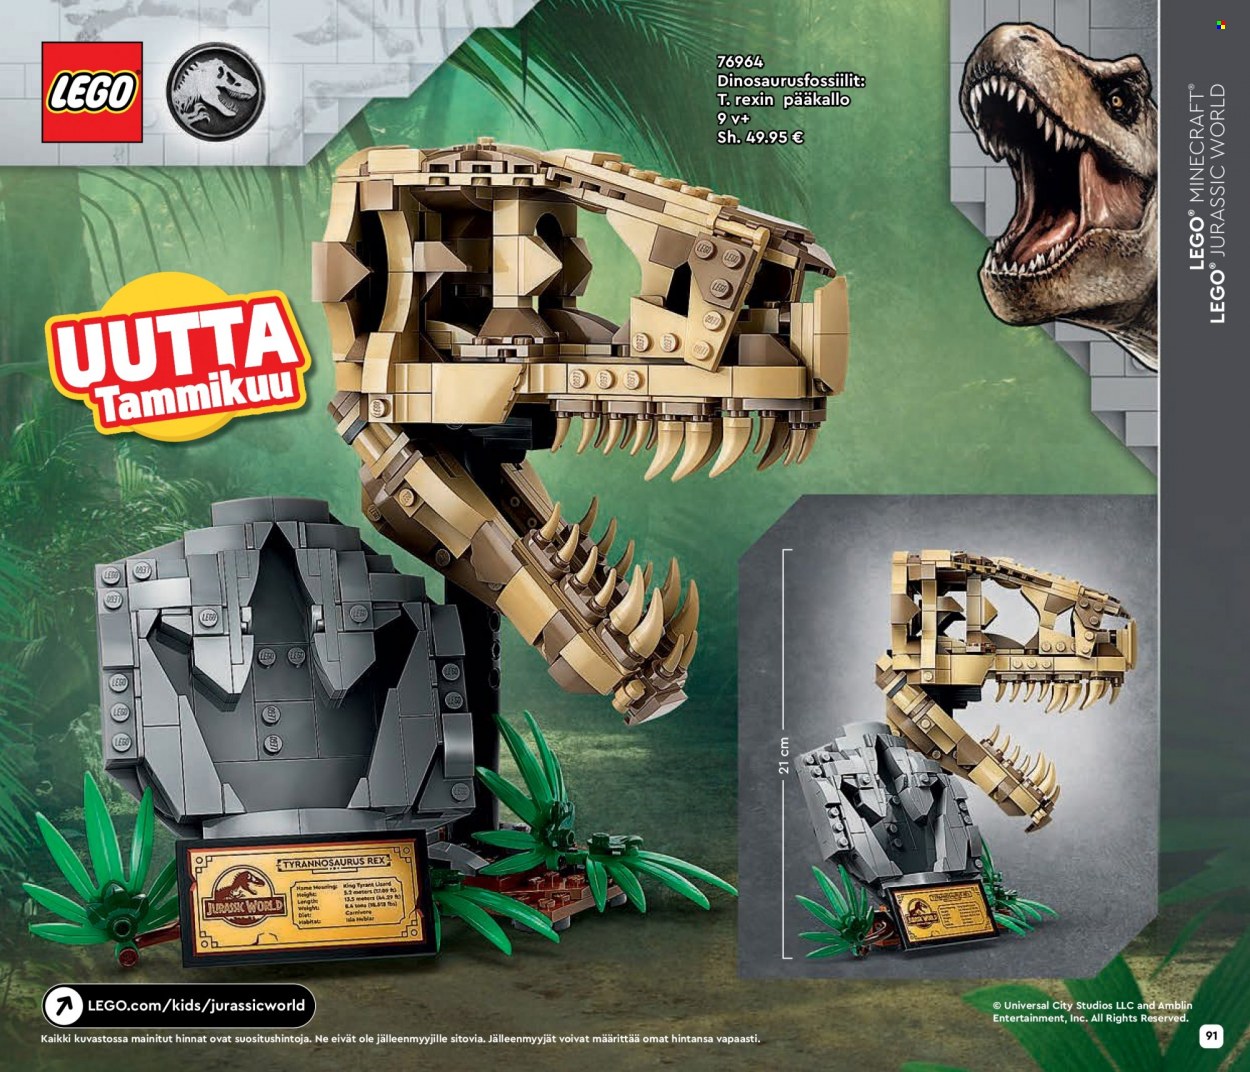 Tokmanni tarjoukset  - Tarjoustuotteet - Jurassic World, LEGO, hame, LEGO Jurassic World. Sivu 91.